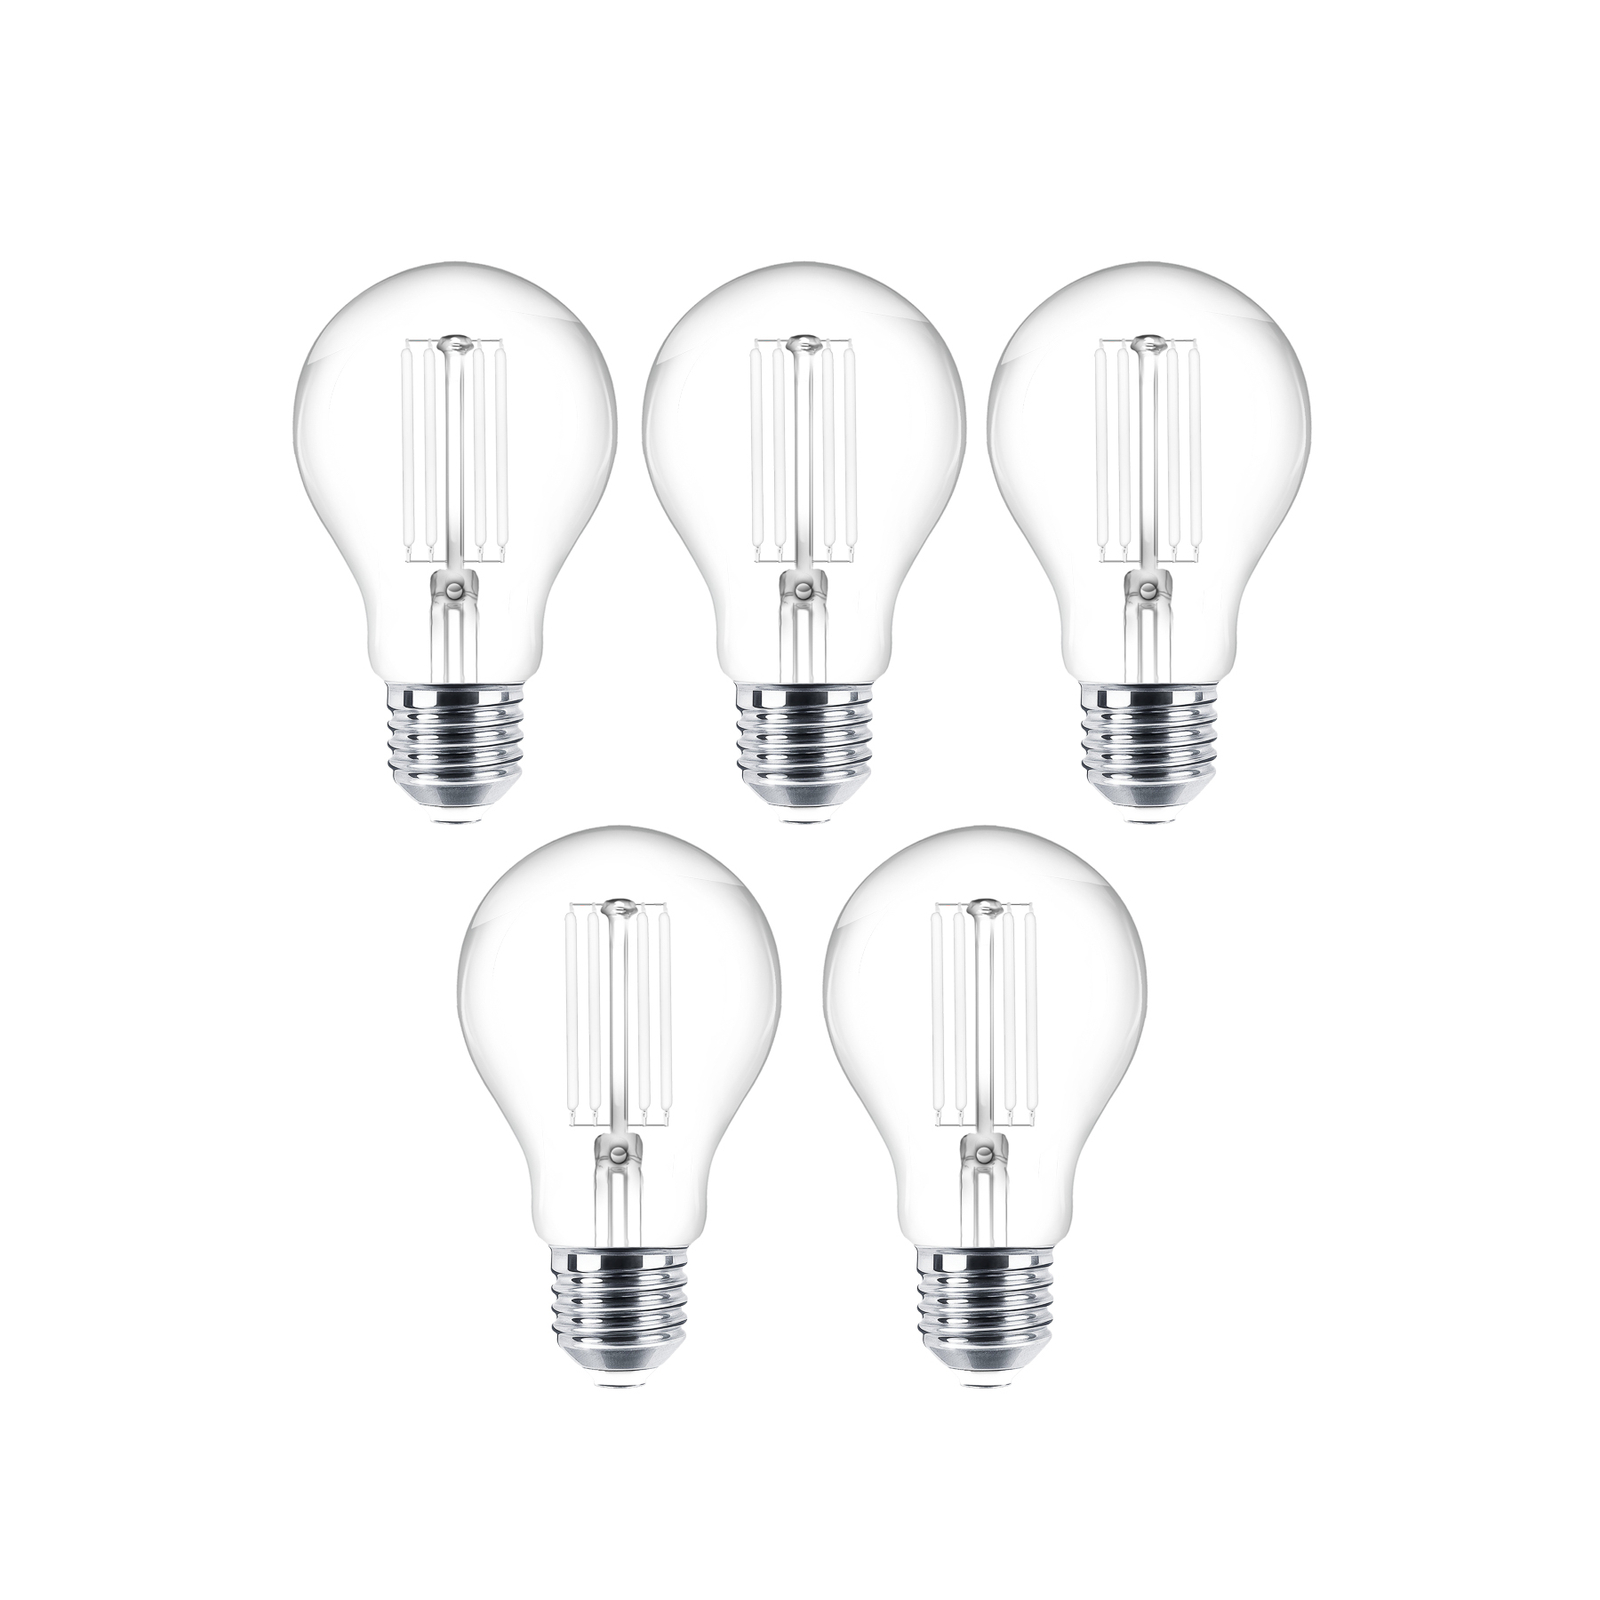 LED bulb filament E27 clear 7W 2700K 806lm set of 5